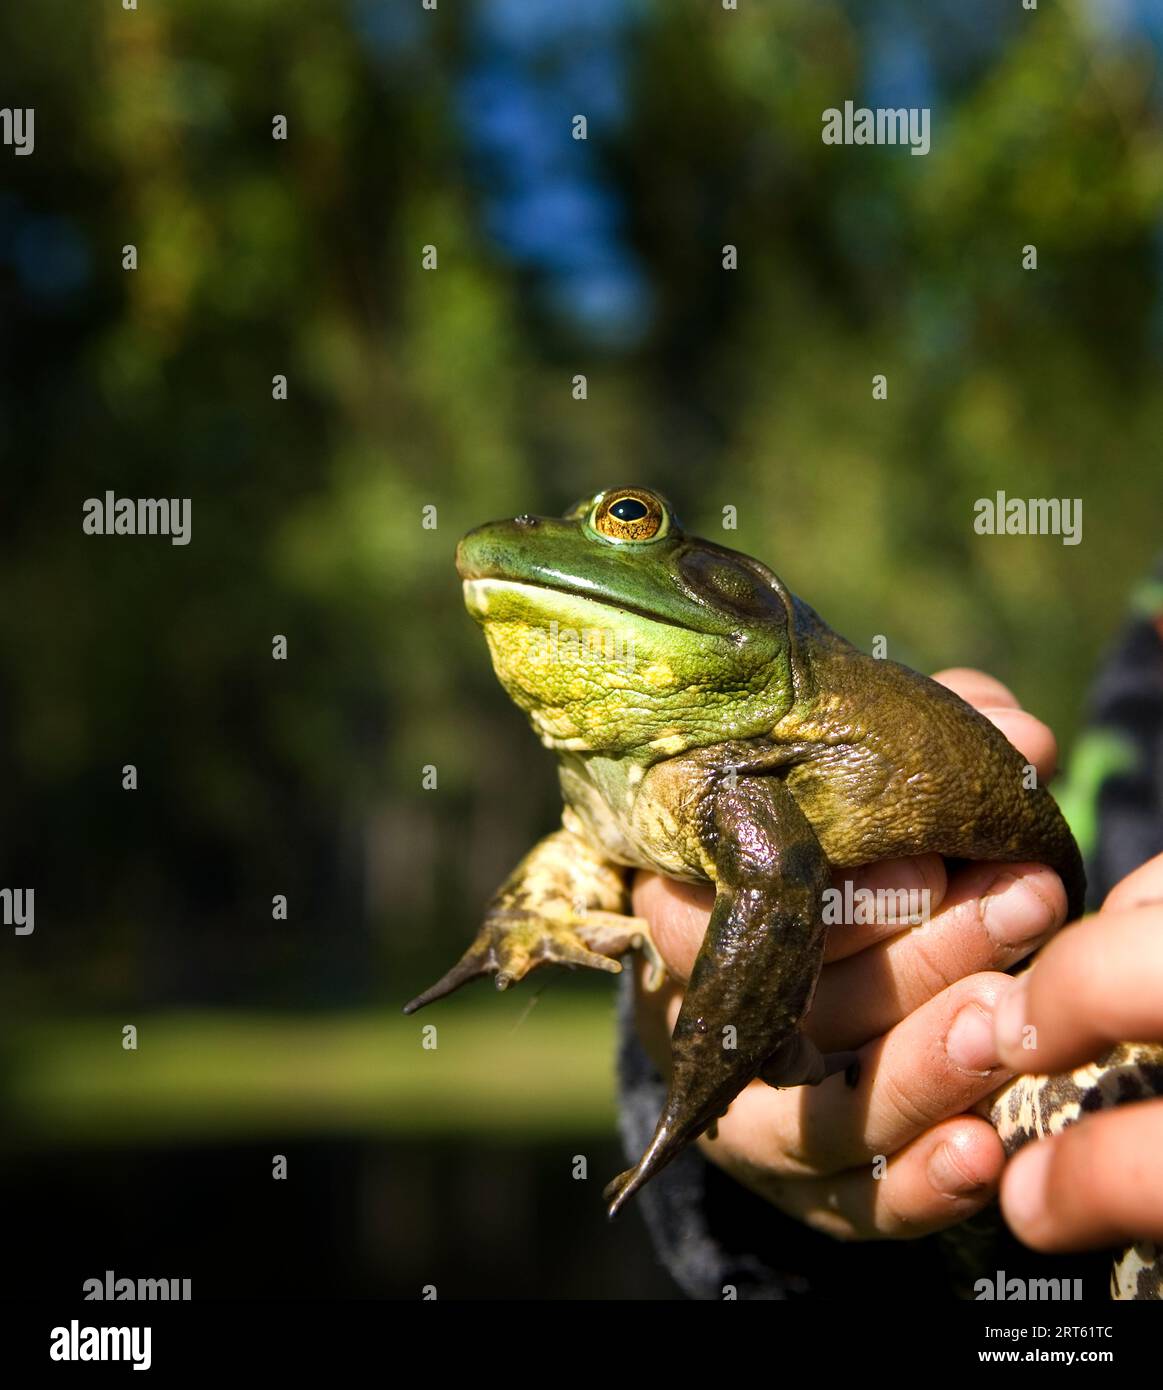 Hände halten einen Bull Frog, Maine, Neuengland. Stockfoto